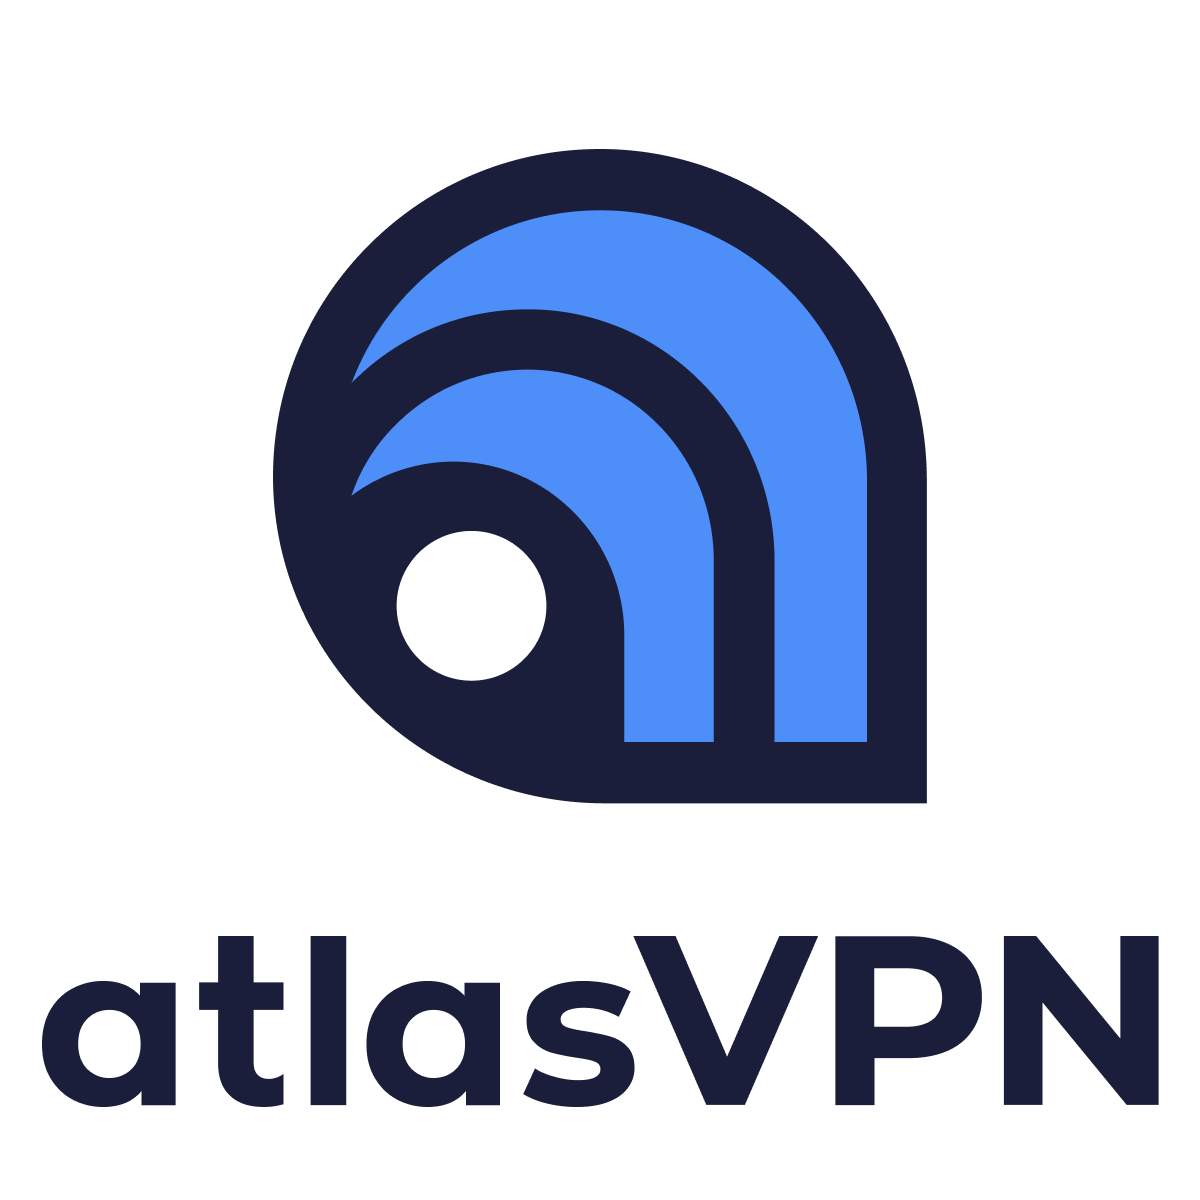 Atlas VPN slevový kupón